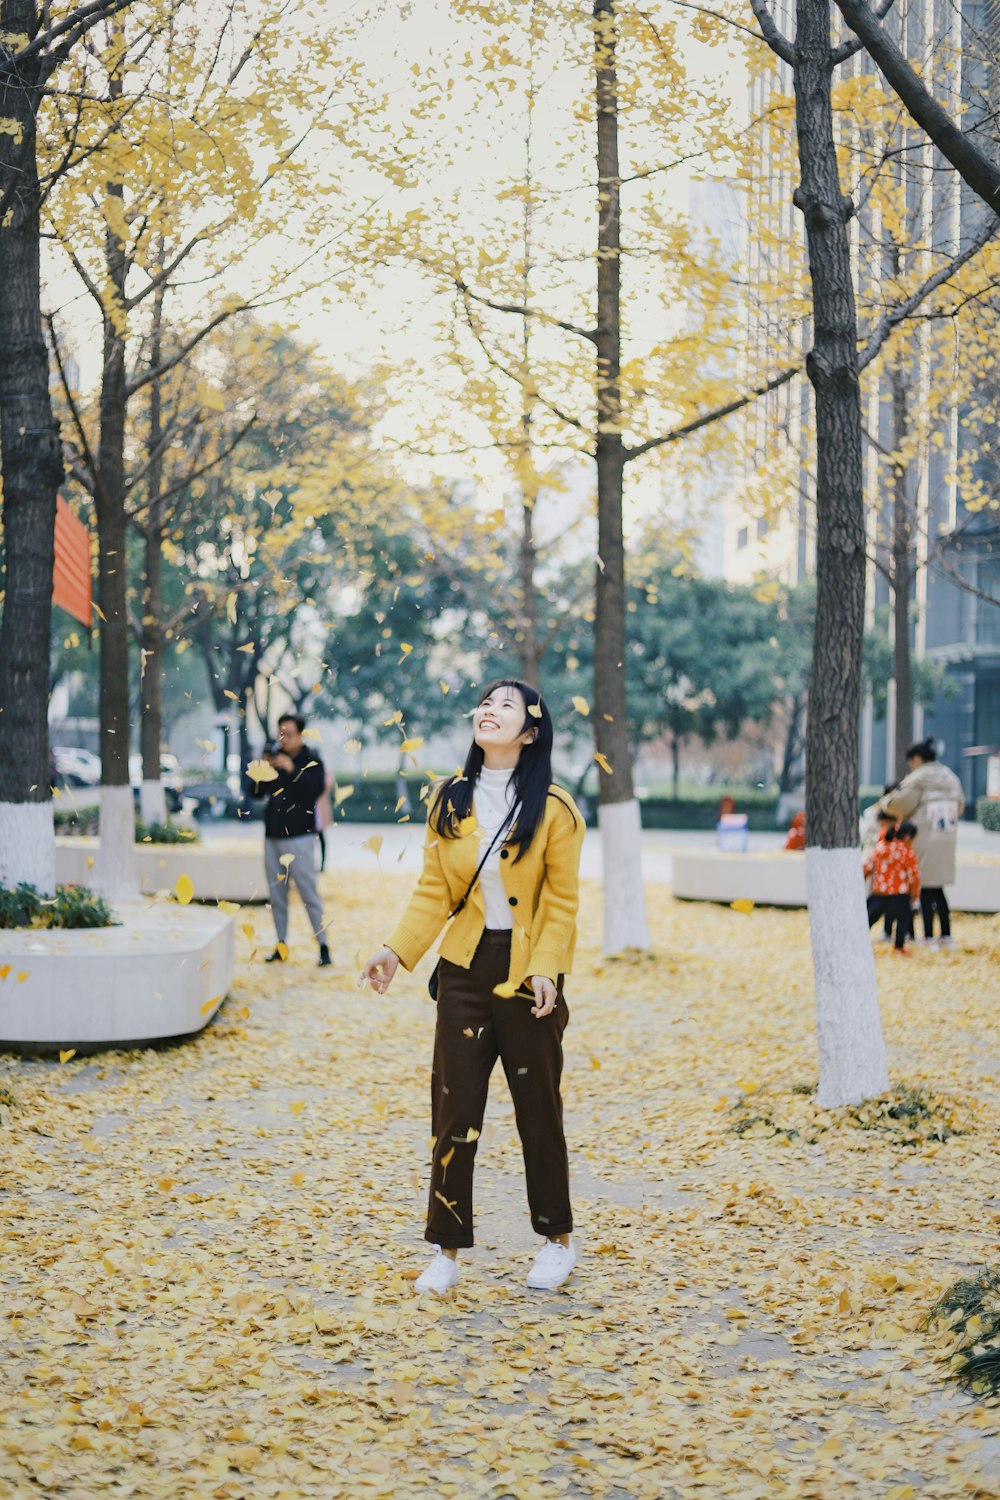 mujer cerca de árboles con hojas que caen